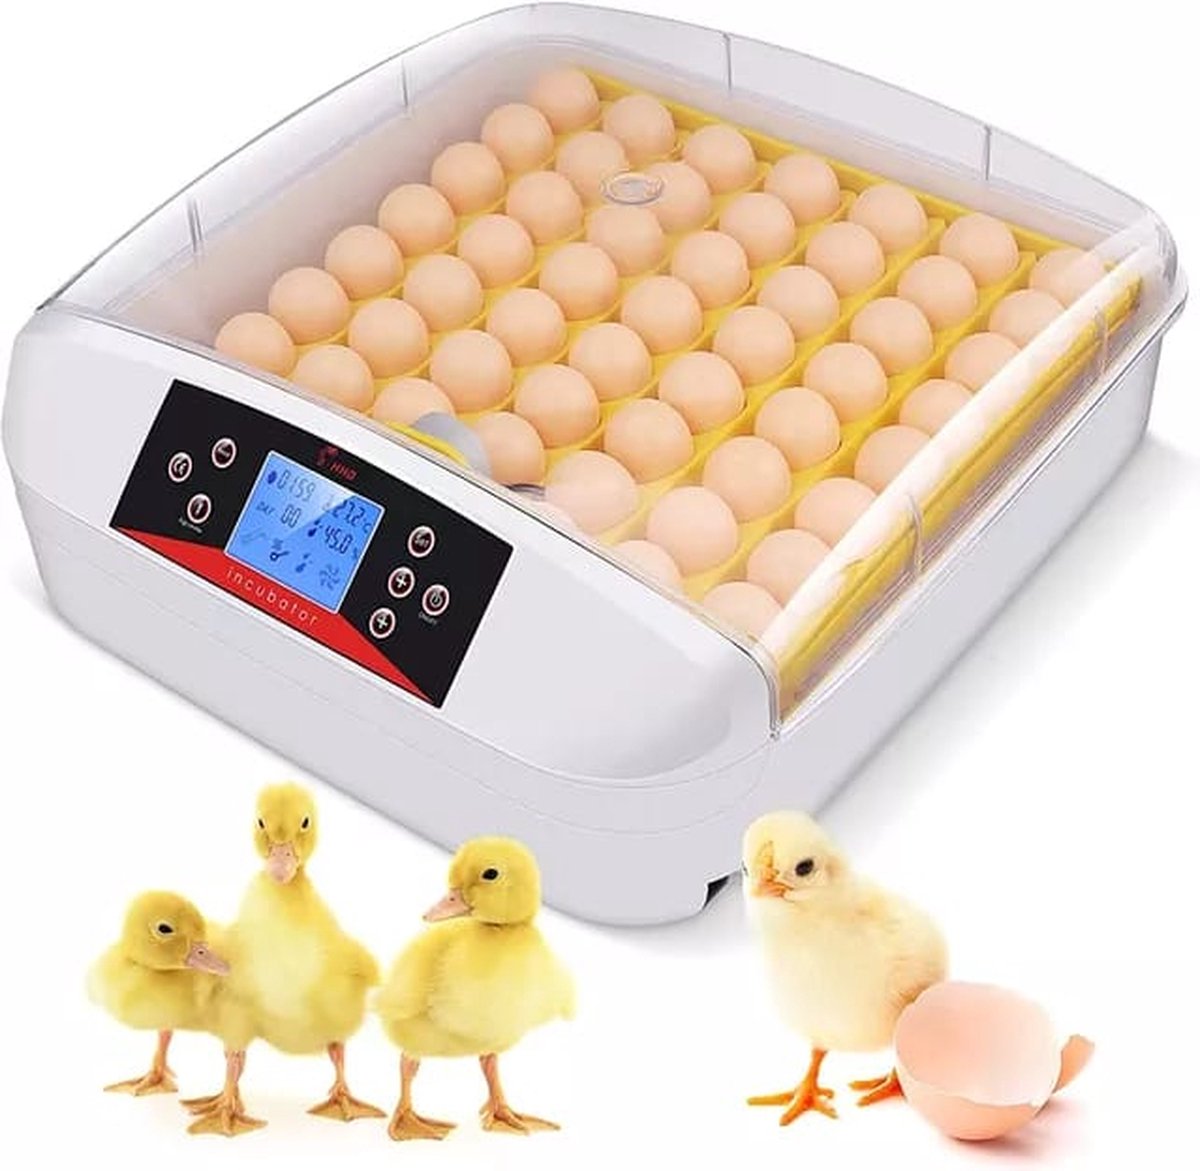 Automatische Broedmachine voor 56 eieren met geïntegreerde schouwlampen in het keerrek - automatische keersysteem - inclusief waterflesje met spitse tuit - met Nederlandse handleiding - Merkloos